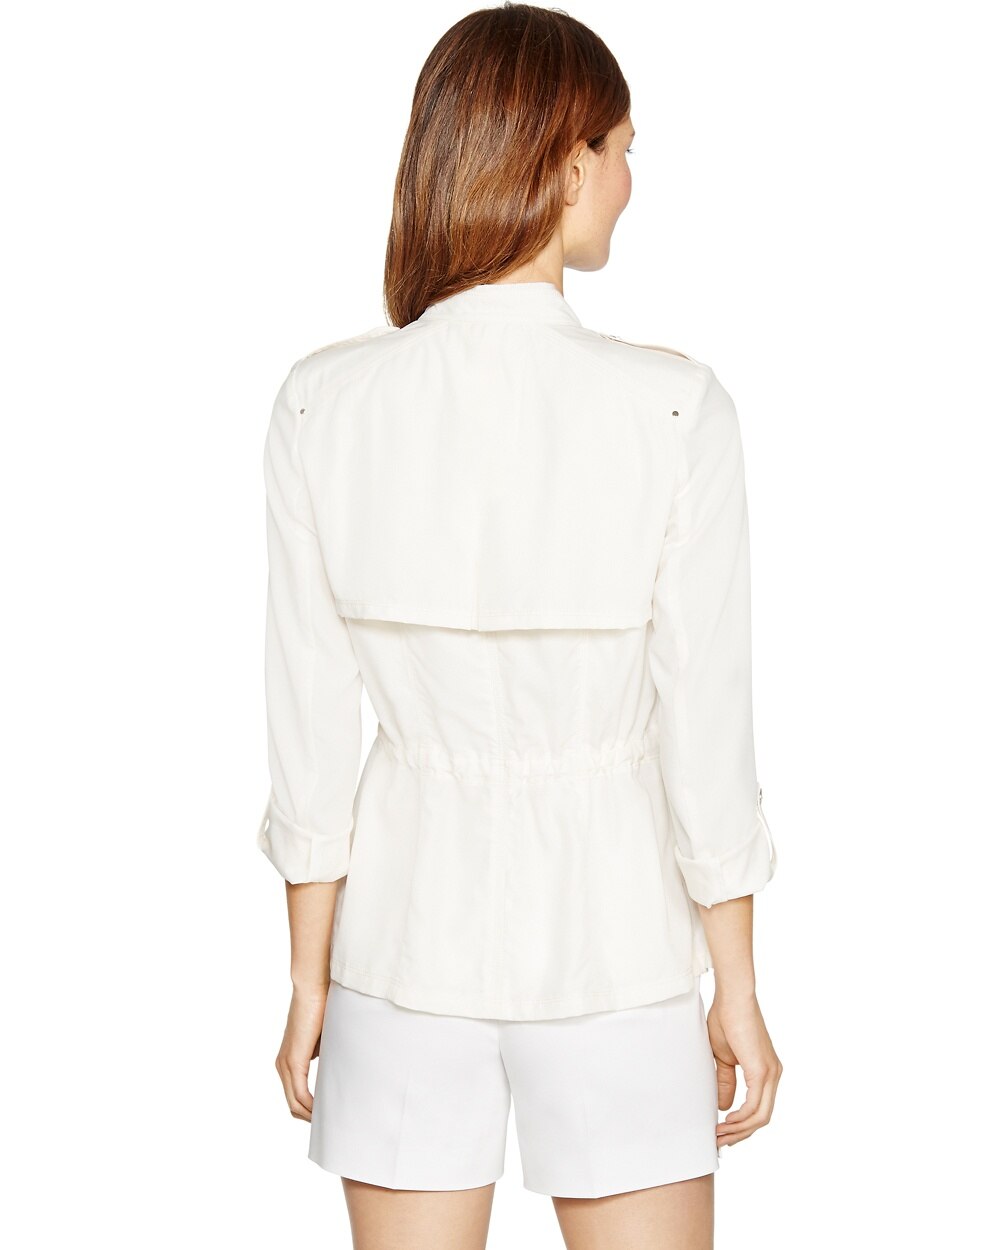 3/4 Sleeve Cream Shirt Jacket - White House Black Market